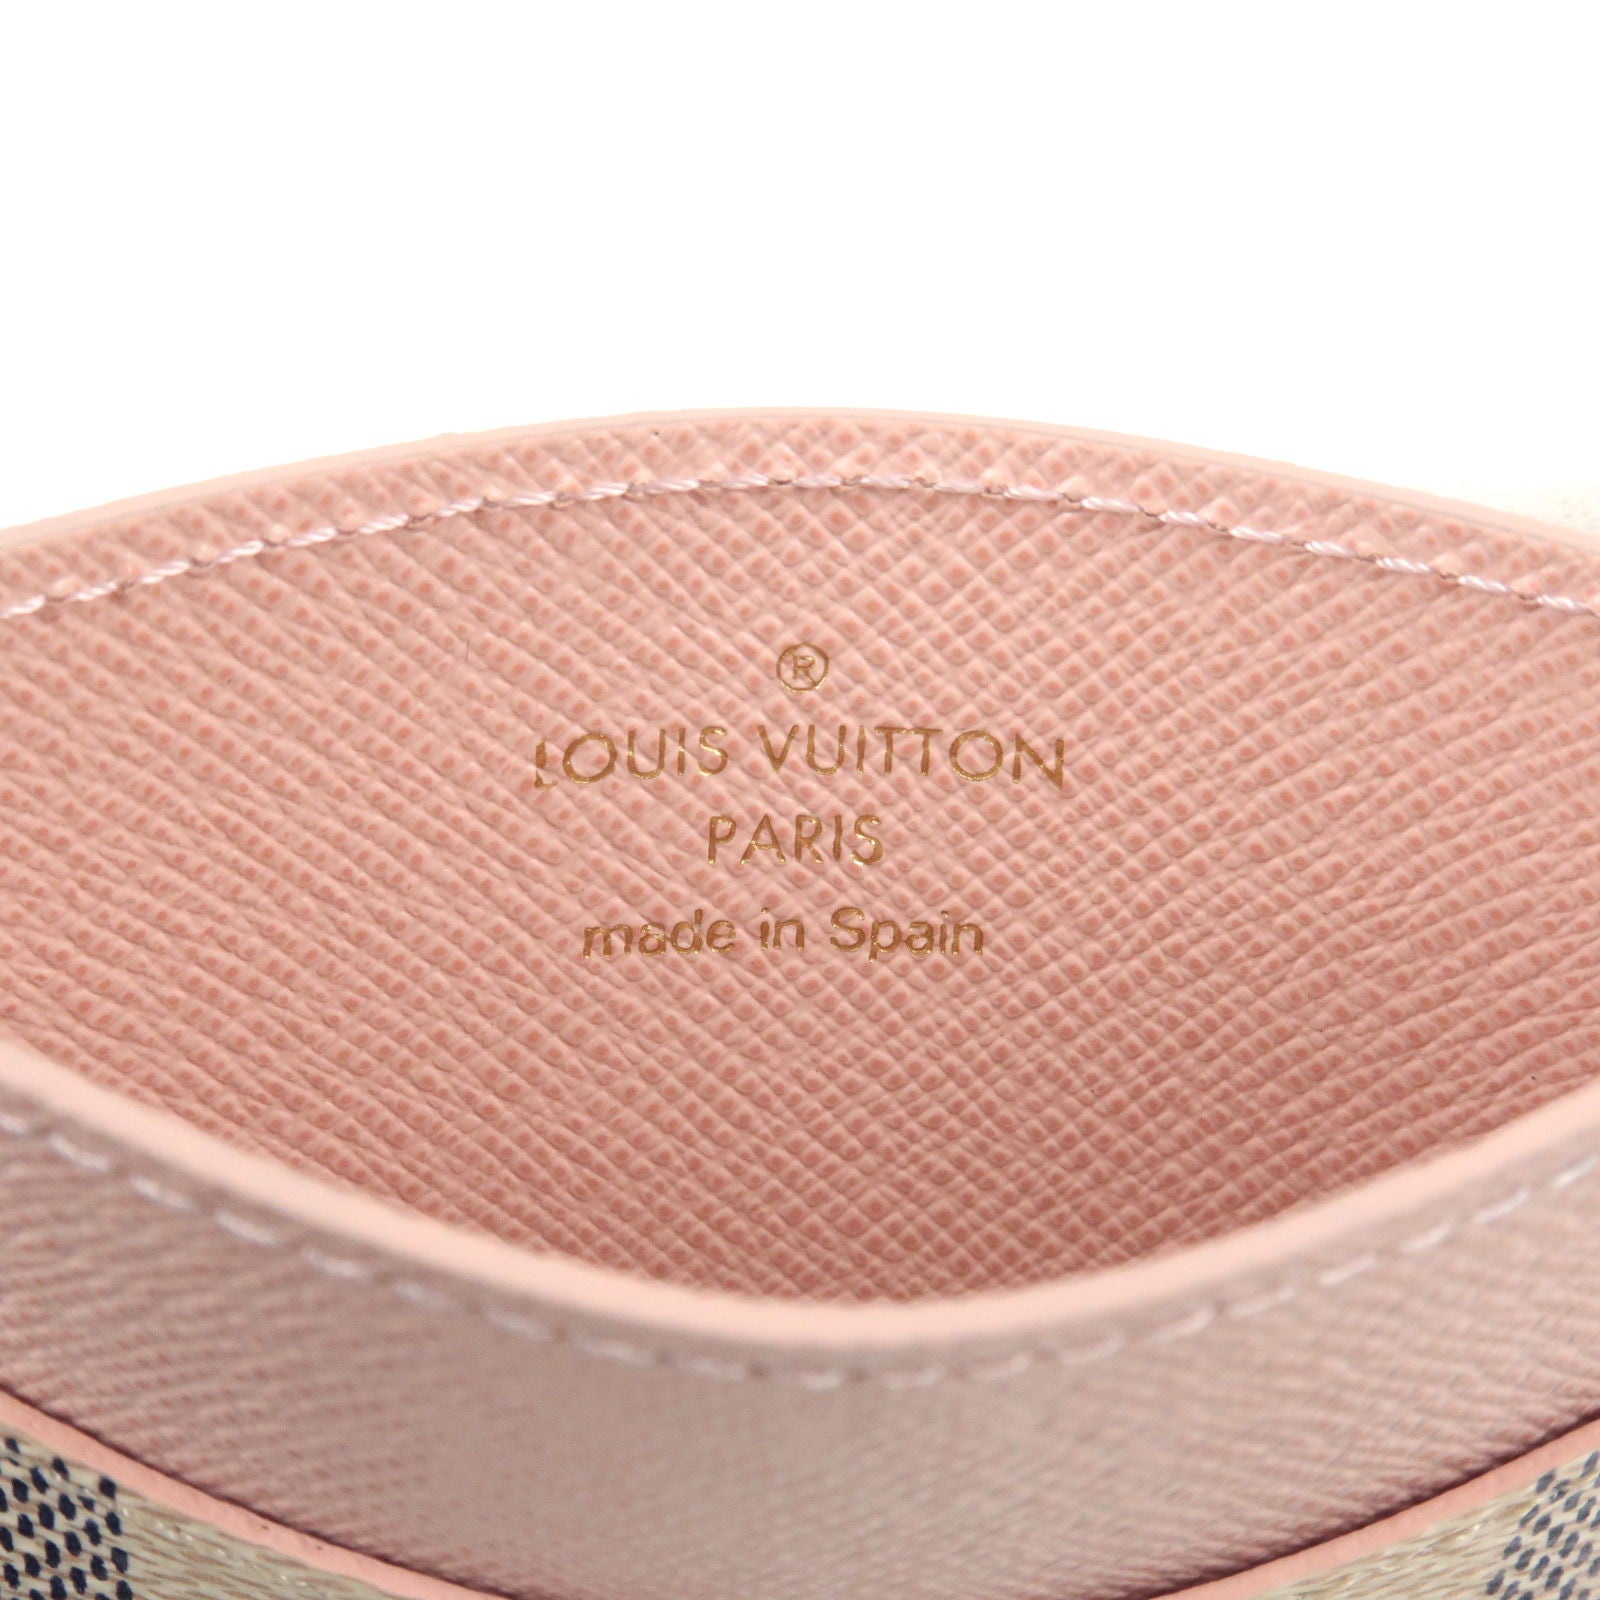 Louis Vuitton card holder N60286 